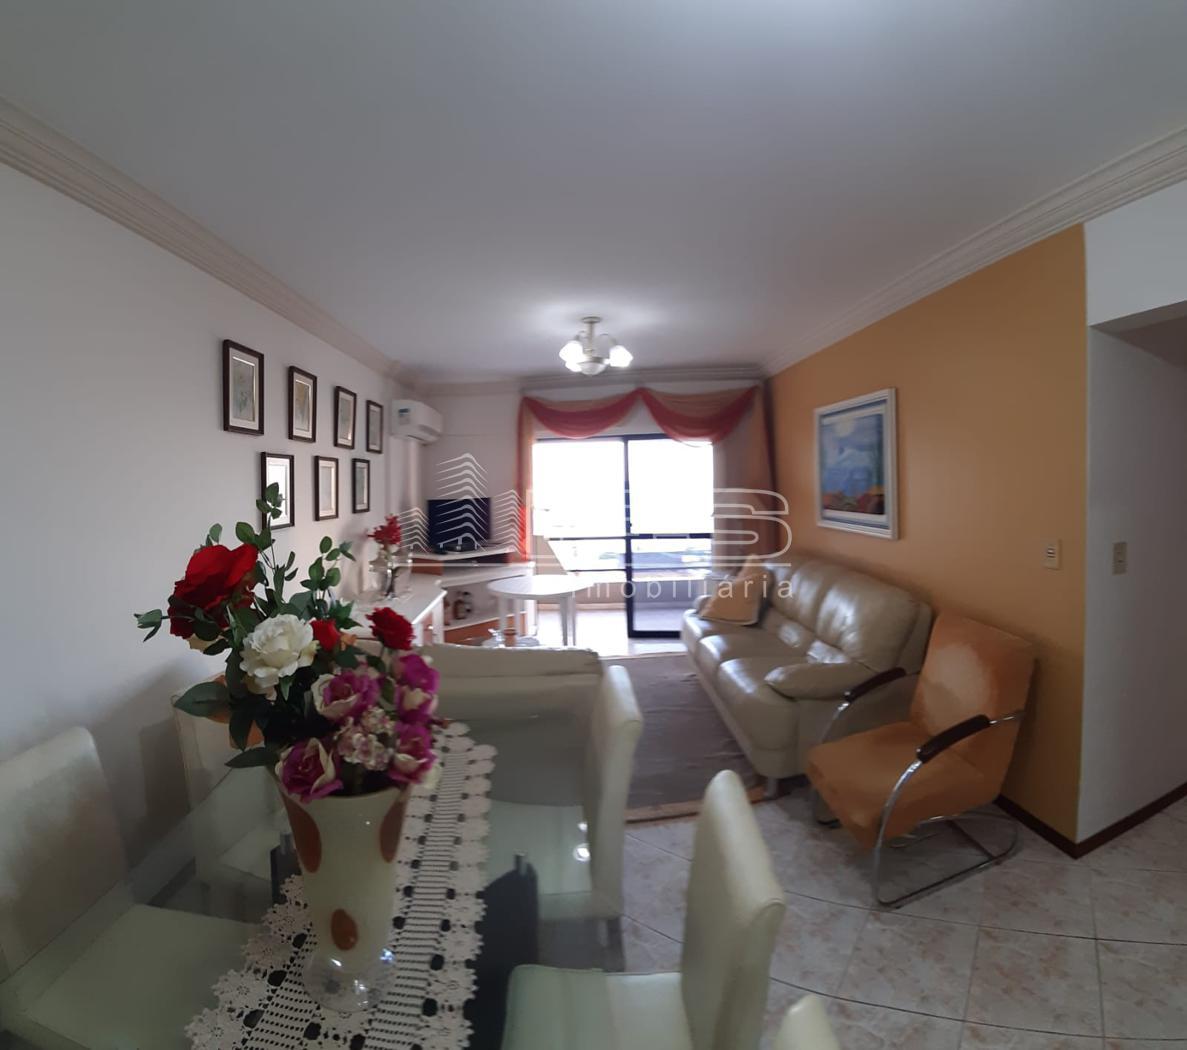 Apartamento com 3 Dormitórios à venda, 136 m² por R$ 800.000,00